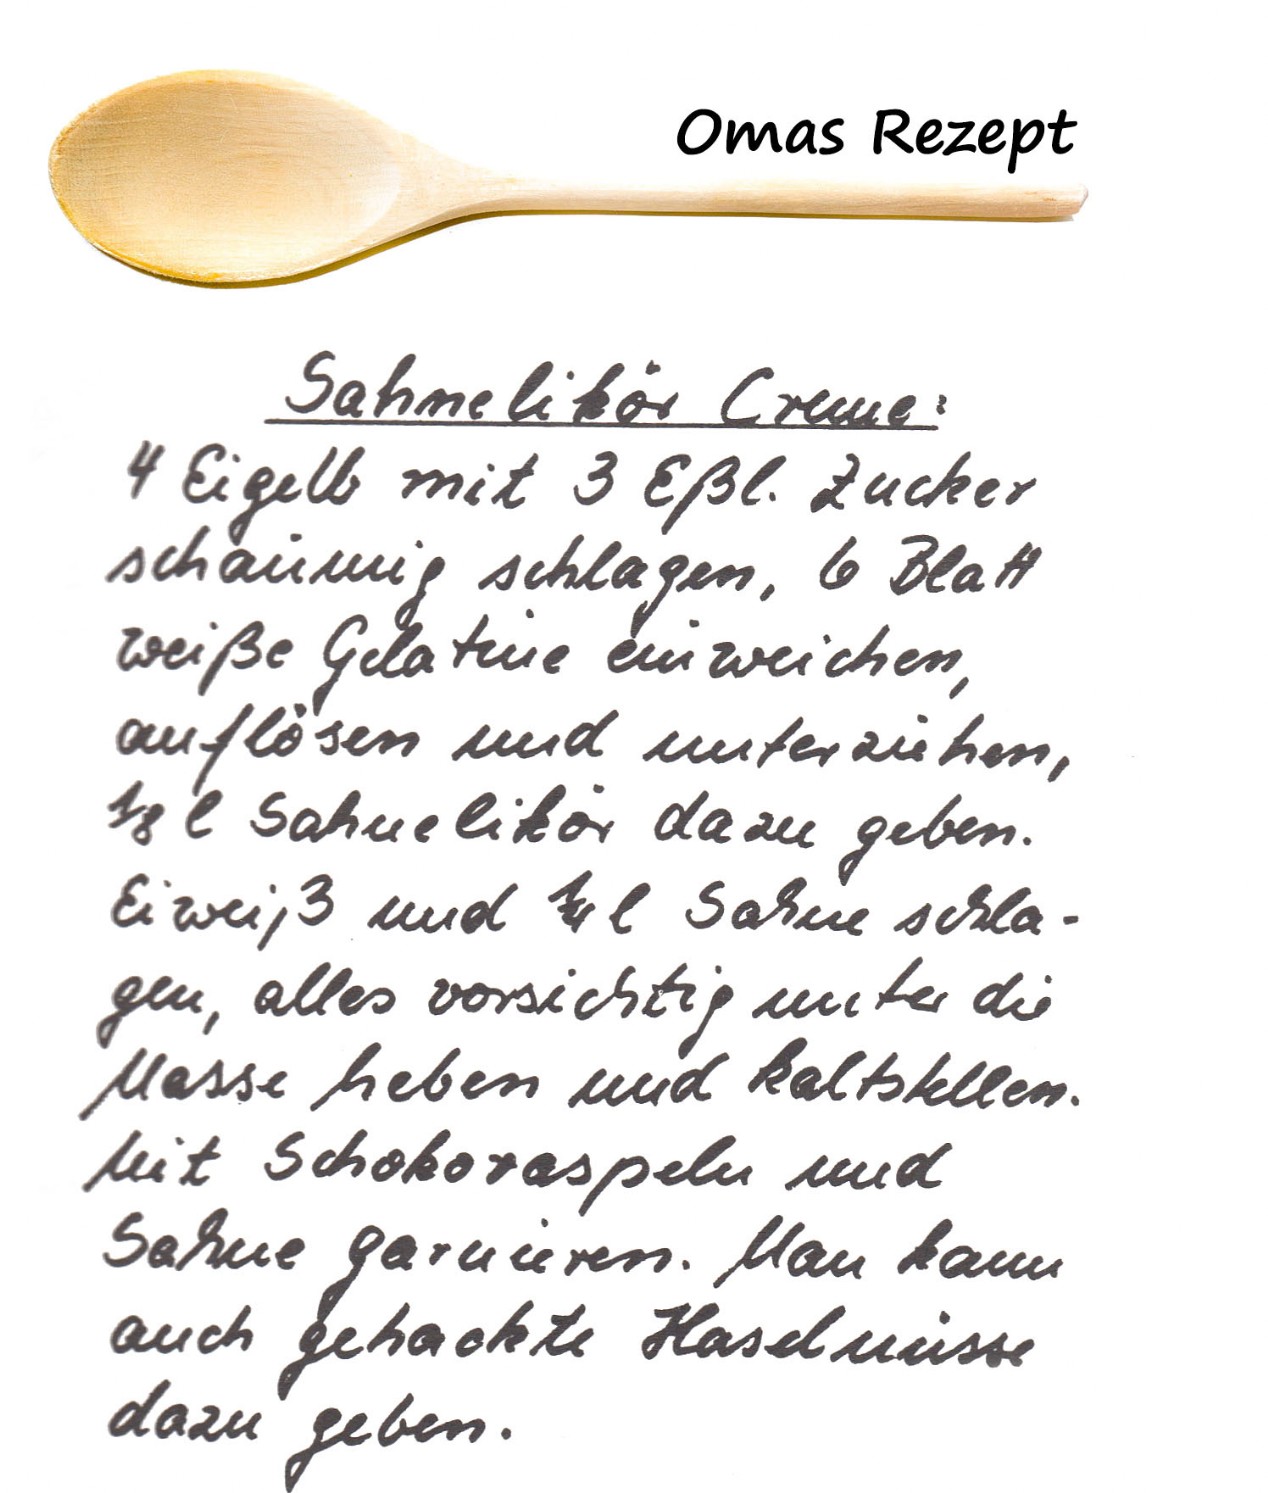 Omas Kochbuch, Desserts und Süßspeisen - Sahne Likör Creme